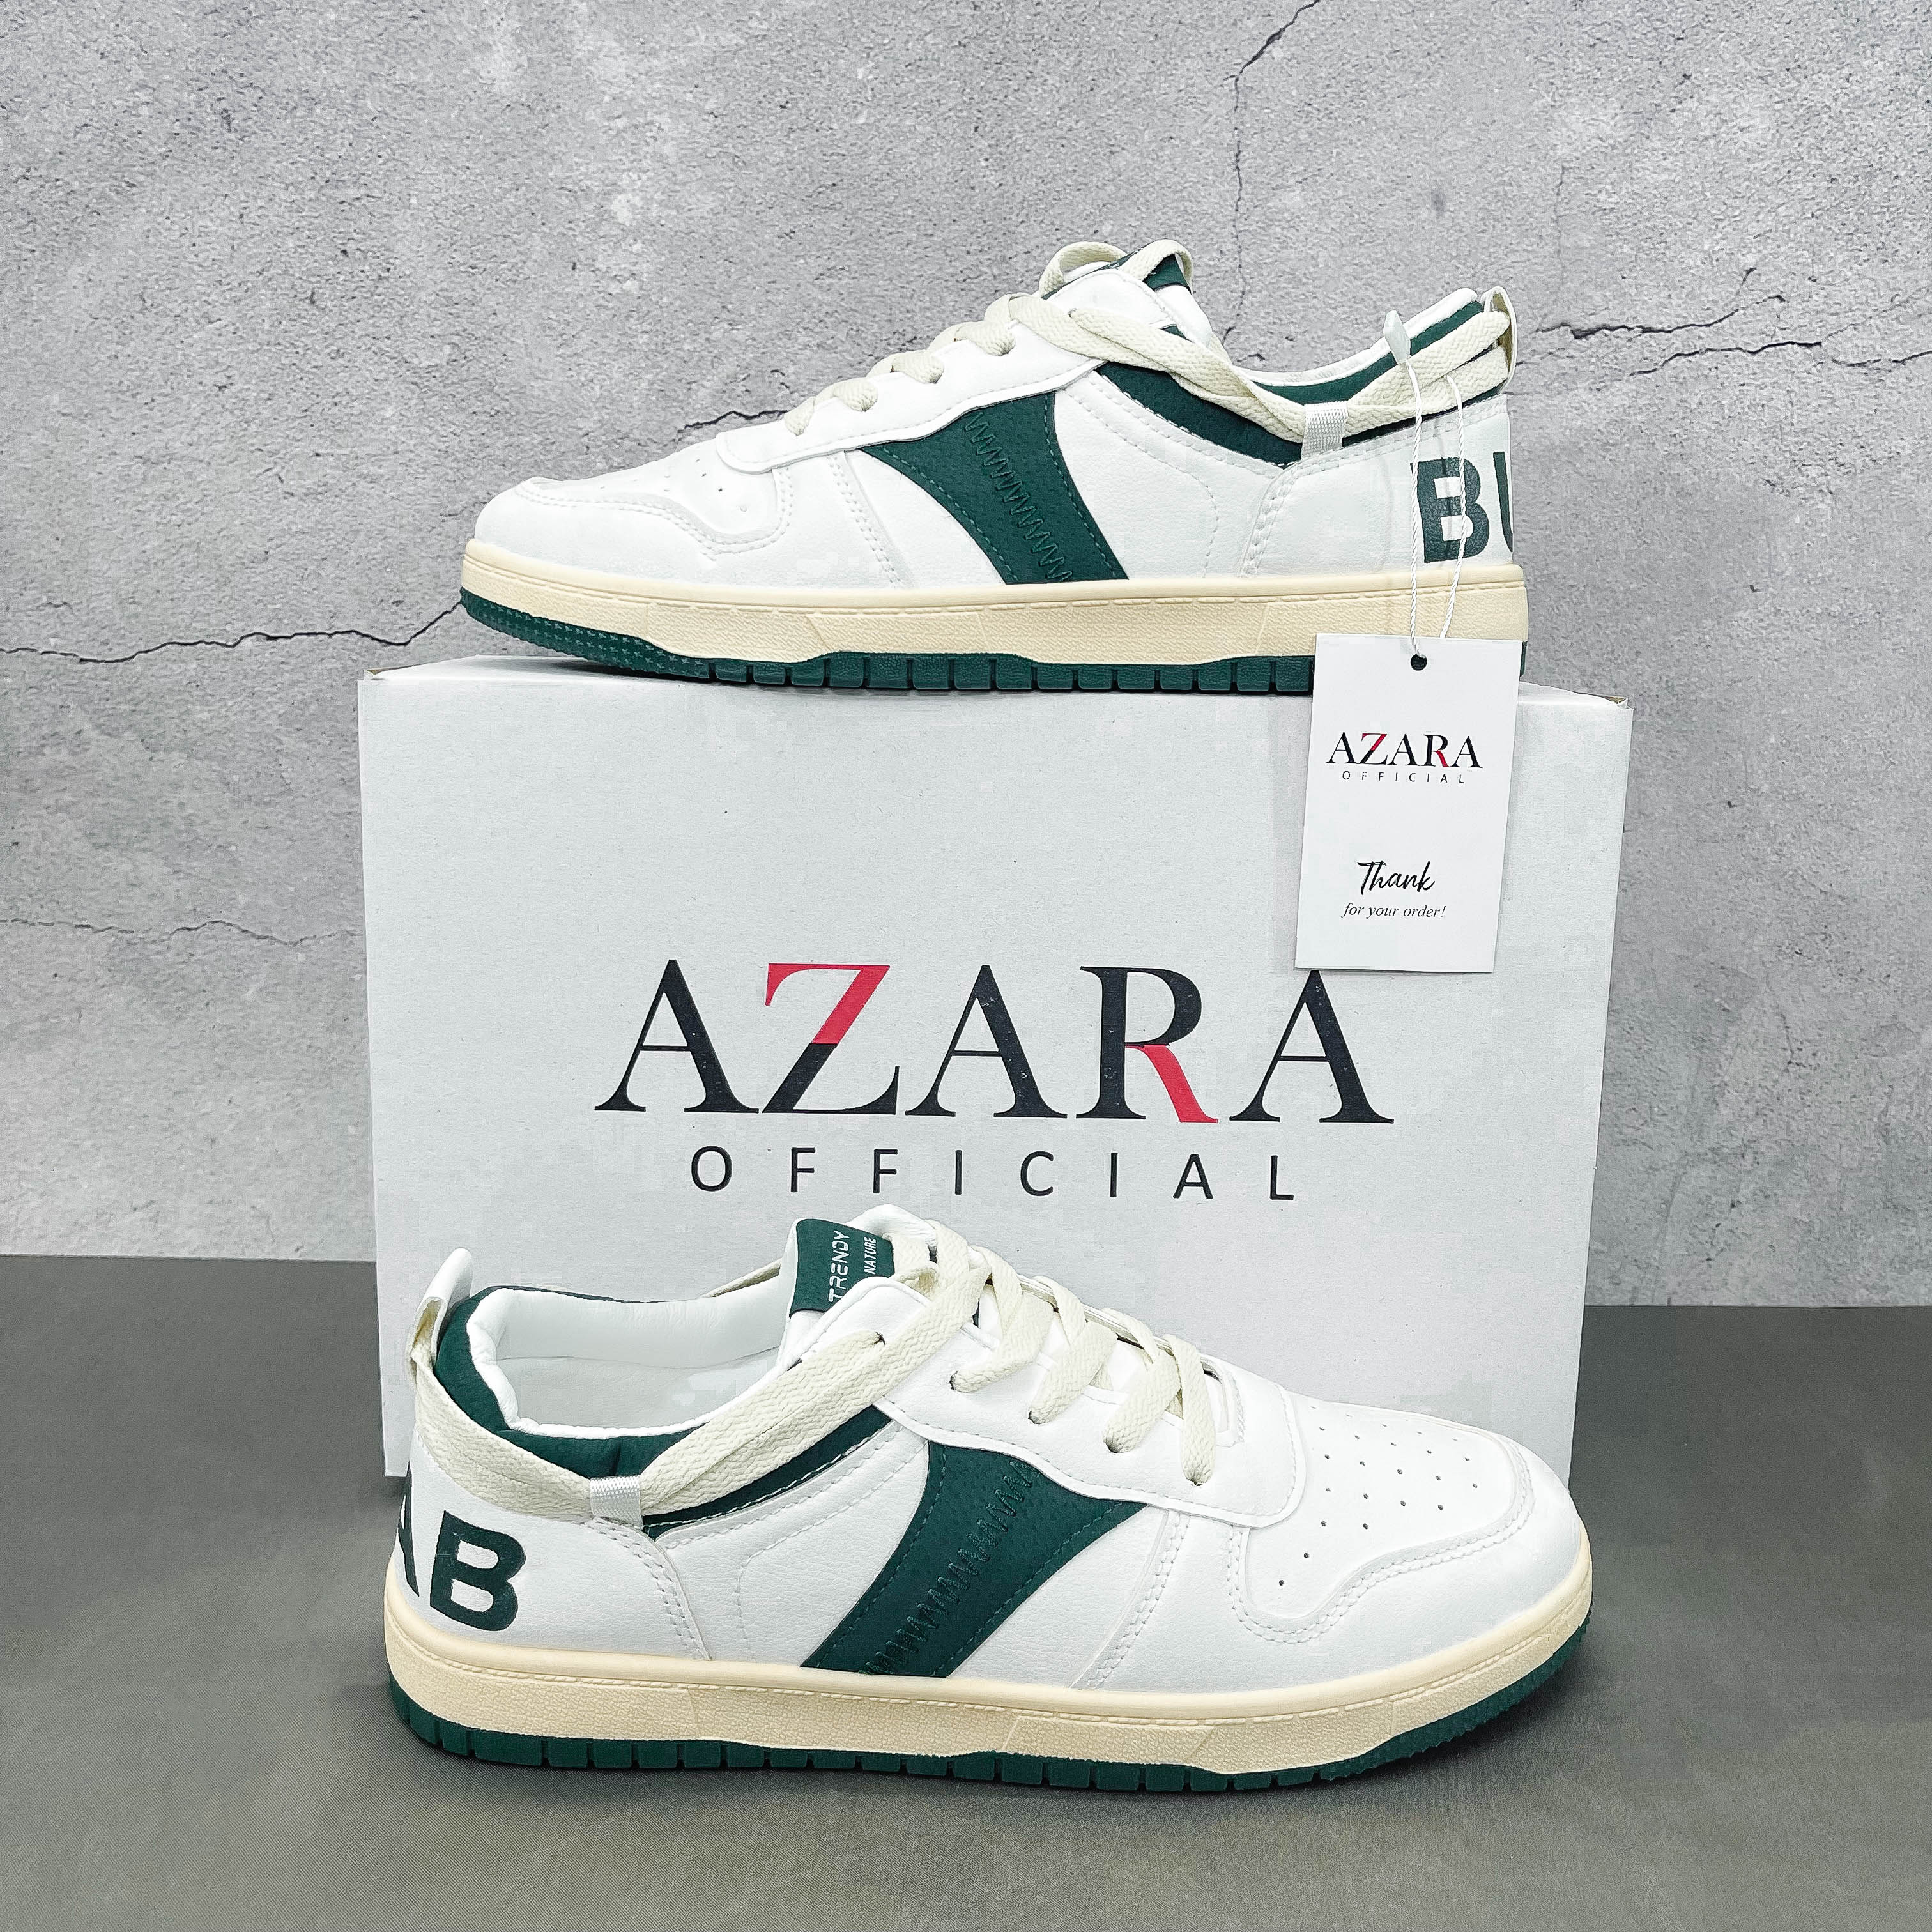 Giày Thể Thao Nam AZARA - Sneaker Màu Xanh Lá - Xanh Lam Mẫu Mới 2022, Kiểu Dáng Trẻ Trung, Năng Động - G5508